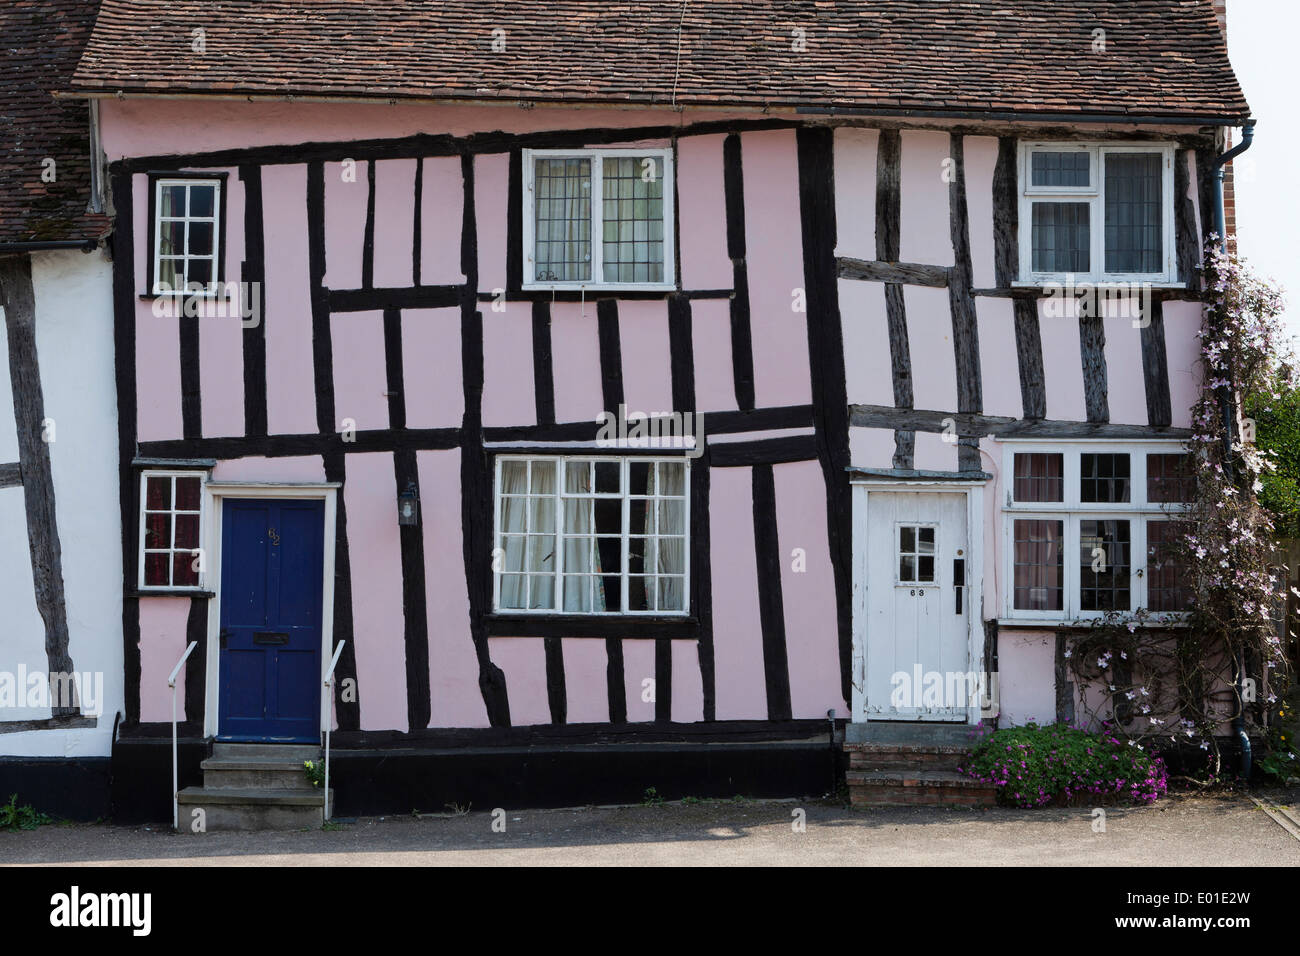 Krumm, Fachwerk-Gebäude in dem hübschen Dorf Lavenham, Suffolk, UK. Fotografiert im April Stockfoto